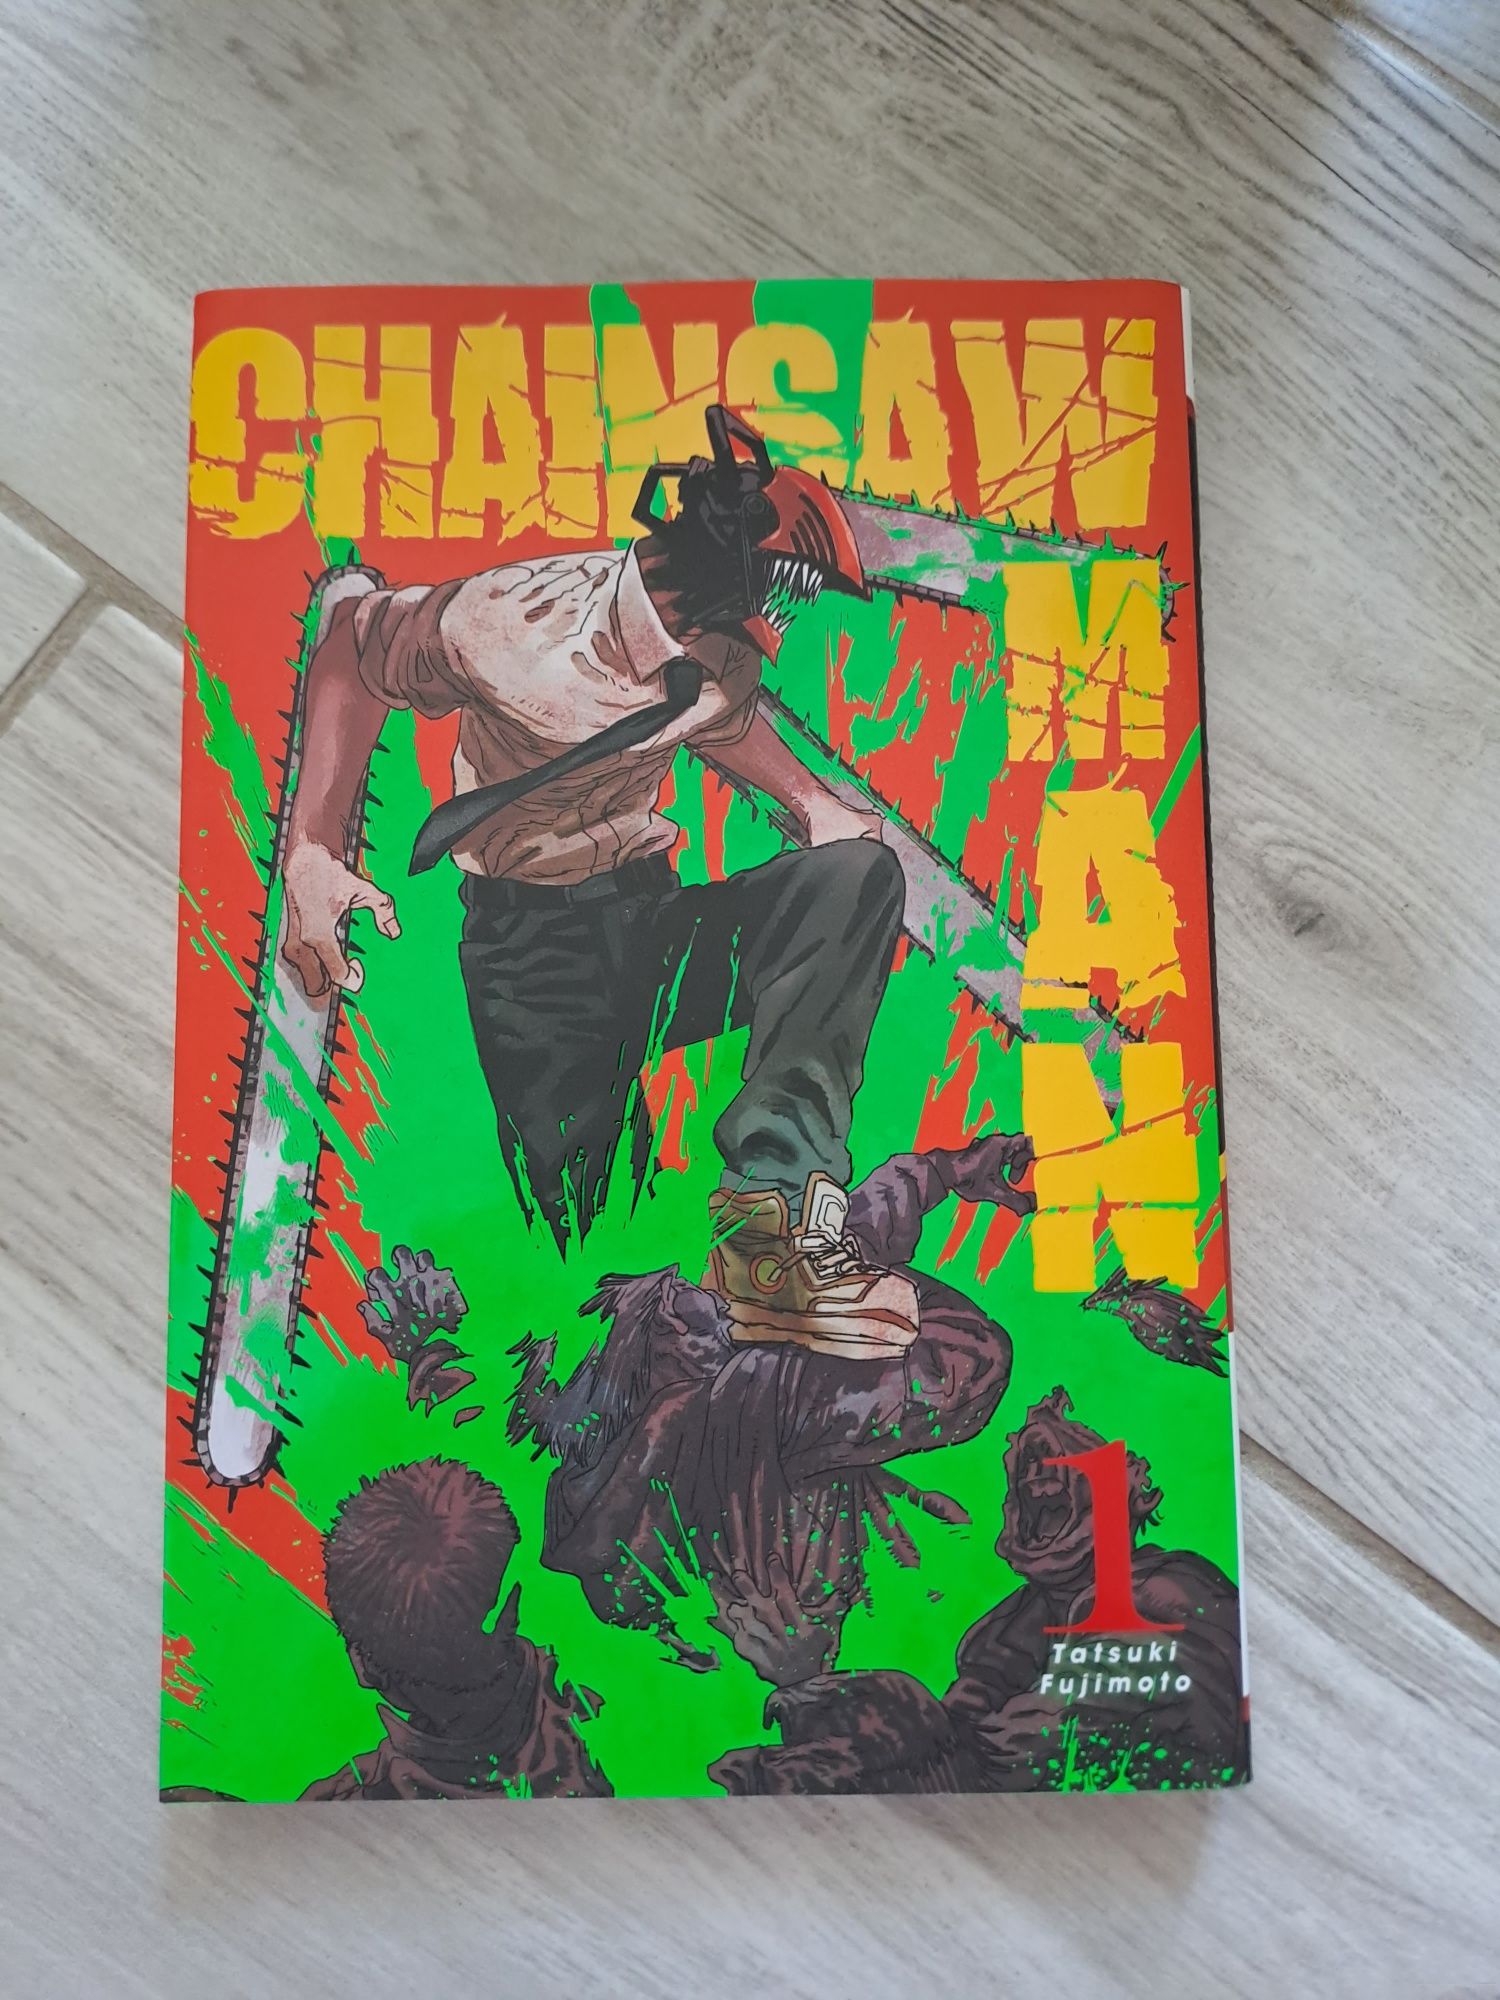 Manga Chainsawman - Tatsuki Fujimoto, tom 1